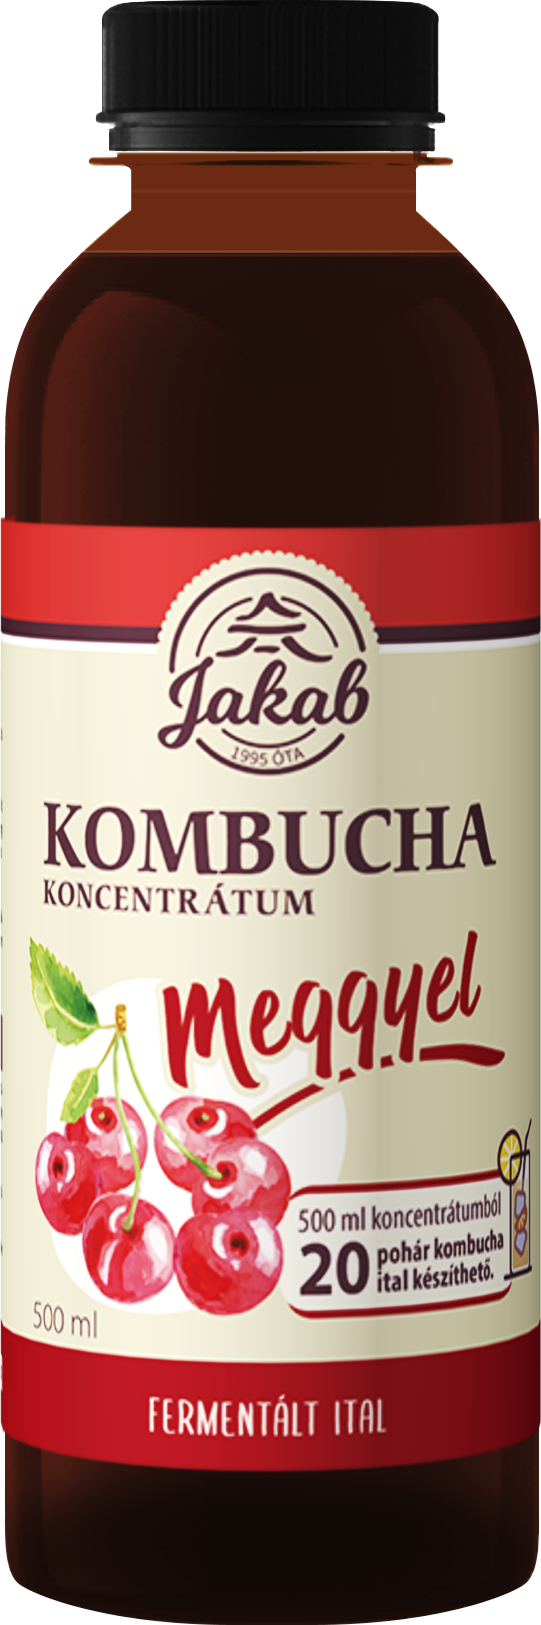 Kombucha tea koncentrátum meggyel 500 ml